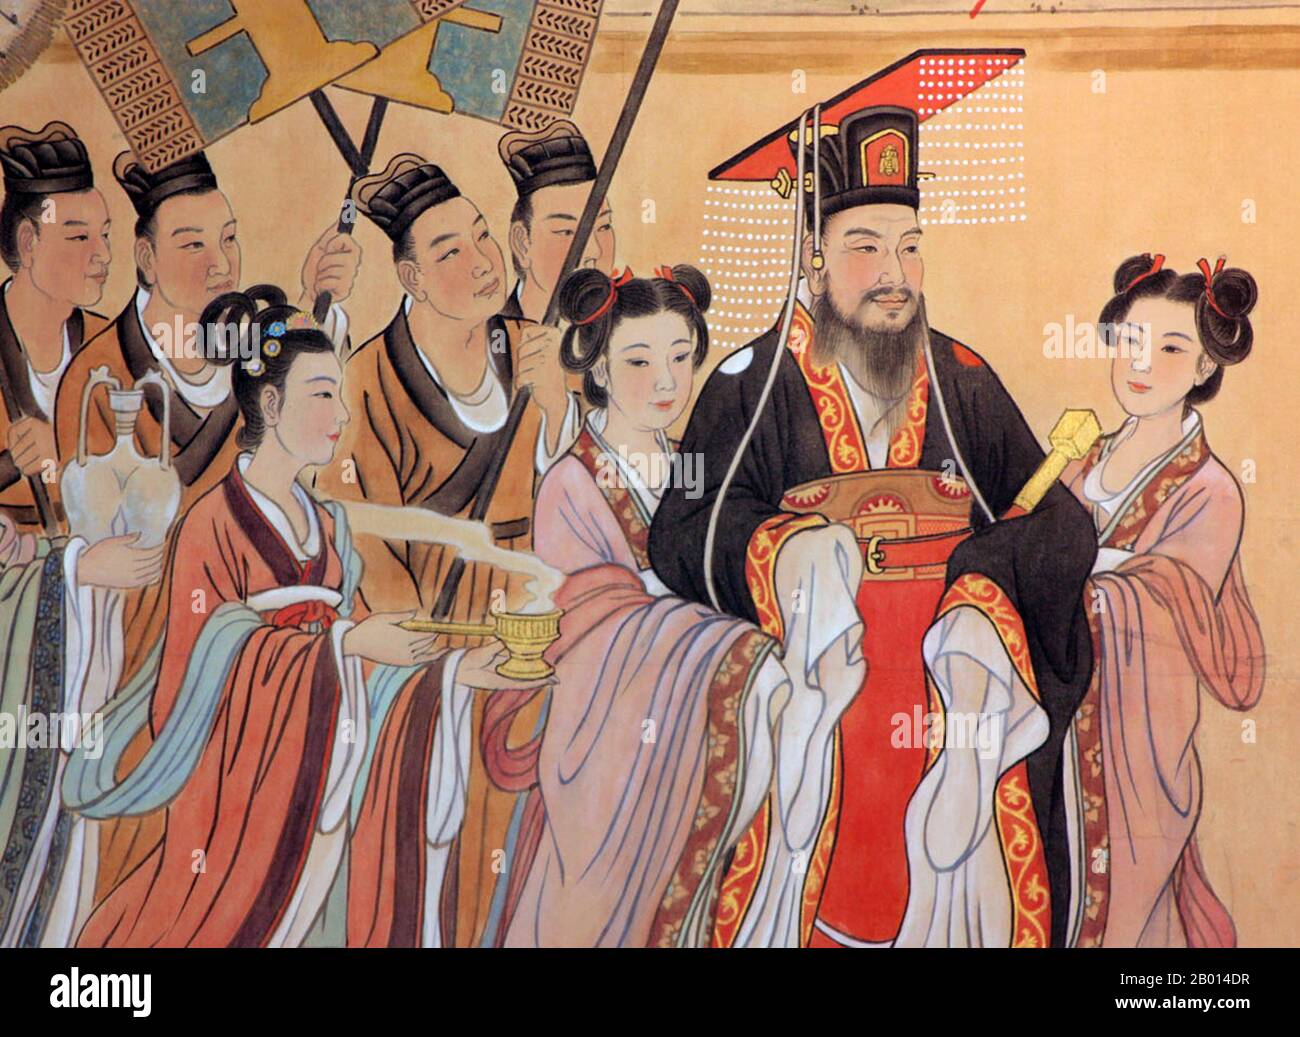 Cina: Murale dell'imperatore Wen (541–604), fondatore della dinastia sui (r.581-604). L'imperatore Wen di sui, nome personale Yang Jian, fu il fondatore e il primo imperatore della dinastia cinese sui (581-618). Era un amministratore che lavorava sodo. Come buddista, incoraggiò la diffusione del buddismo attraverso lo stato. Il regno dell'imperatore Wen introdusse un periodo di grande prosperità non visto dalla dinastia Han. Economicamente, la dinastia prosperò. Si è detto che c'era abbastanza cibo immagazzinato per 50 anni. Anche i militari erano potenti. Foto Stock